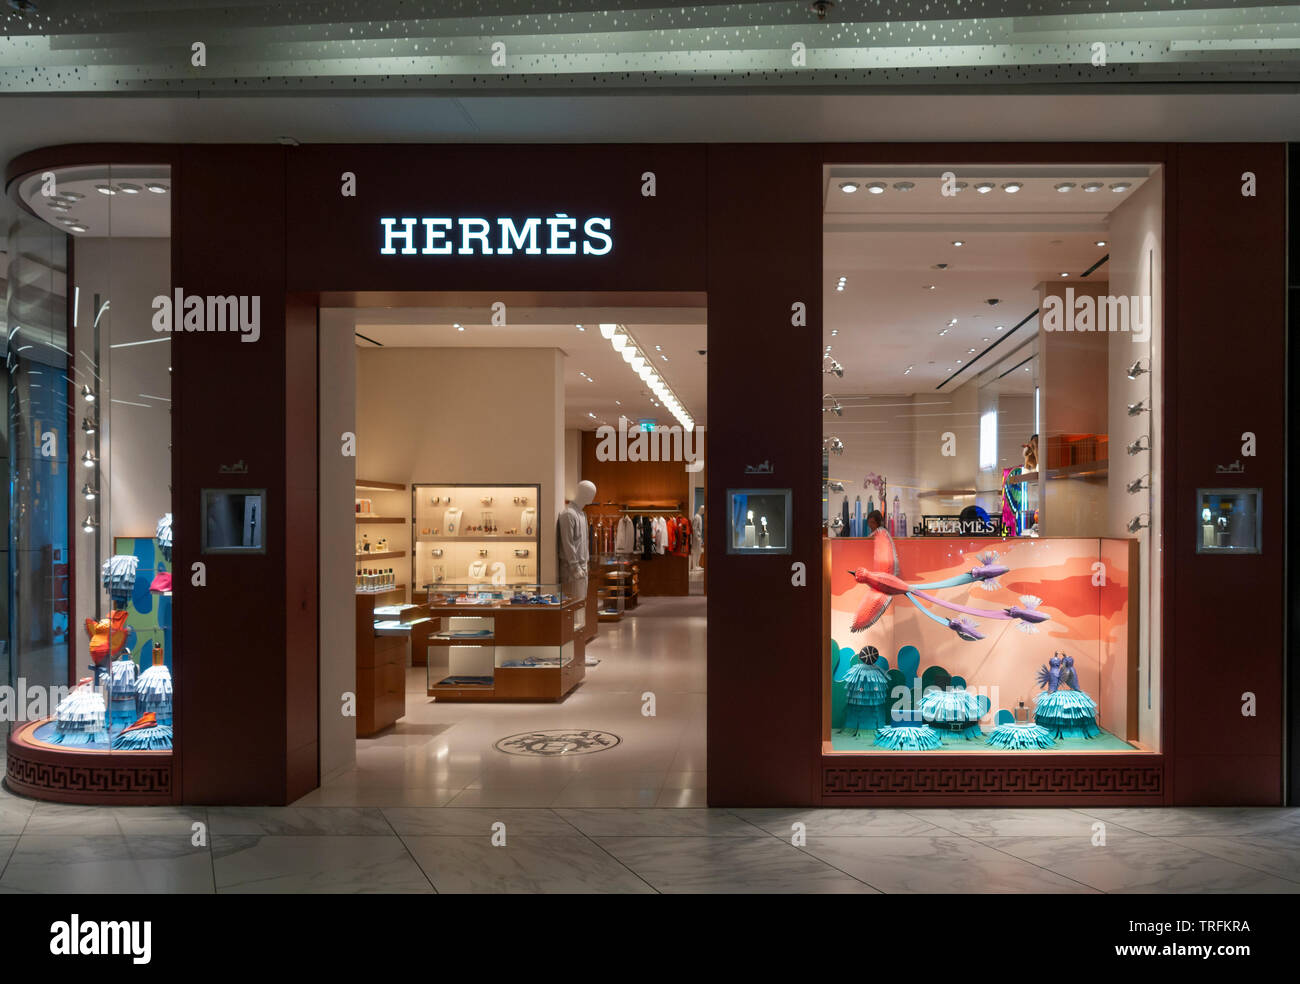 Hermes store Stock Photo by ©Krasnevsky 46672203